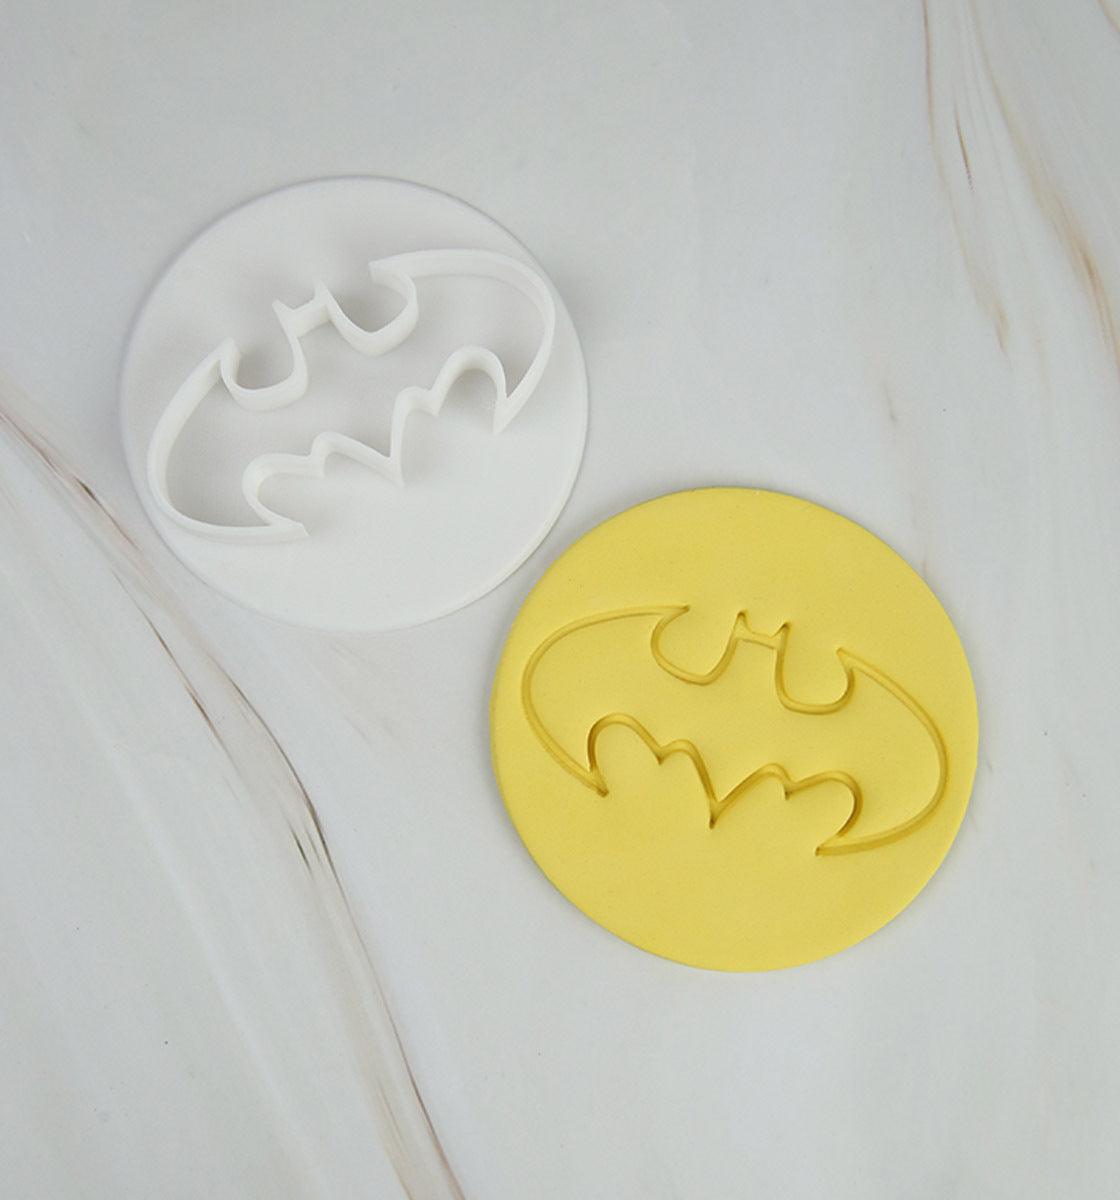 Batman - Cake Stamp - Inspired Baking 